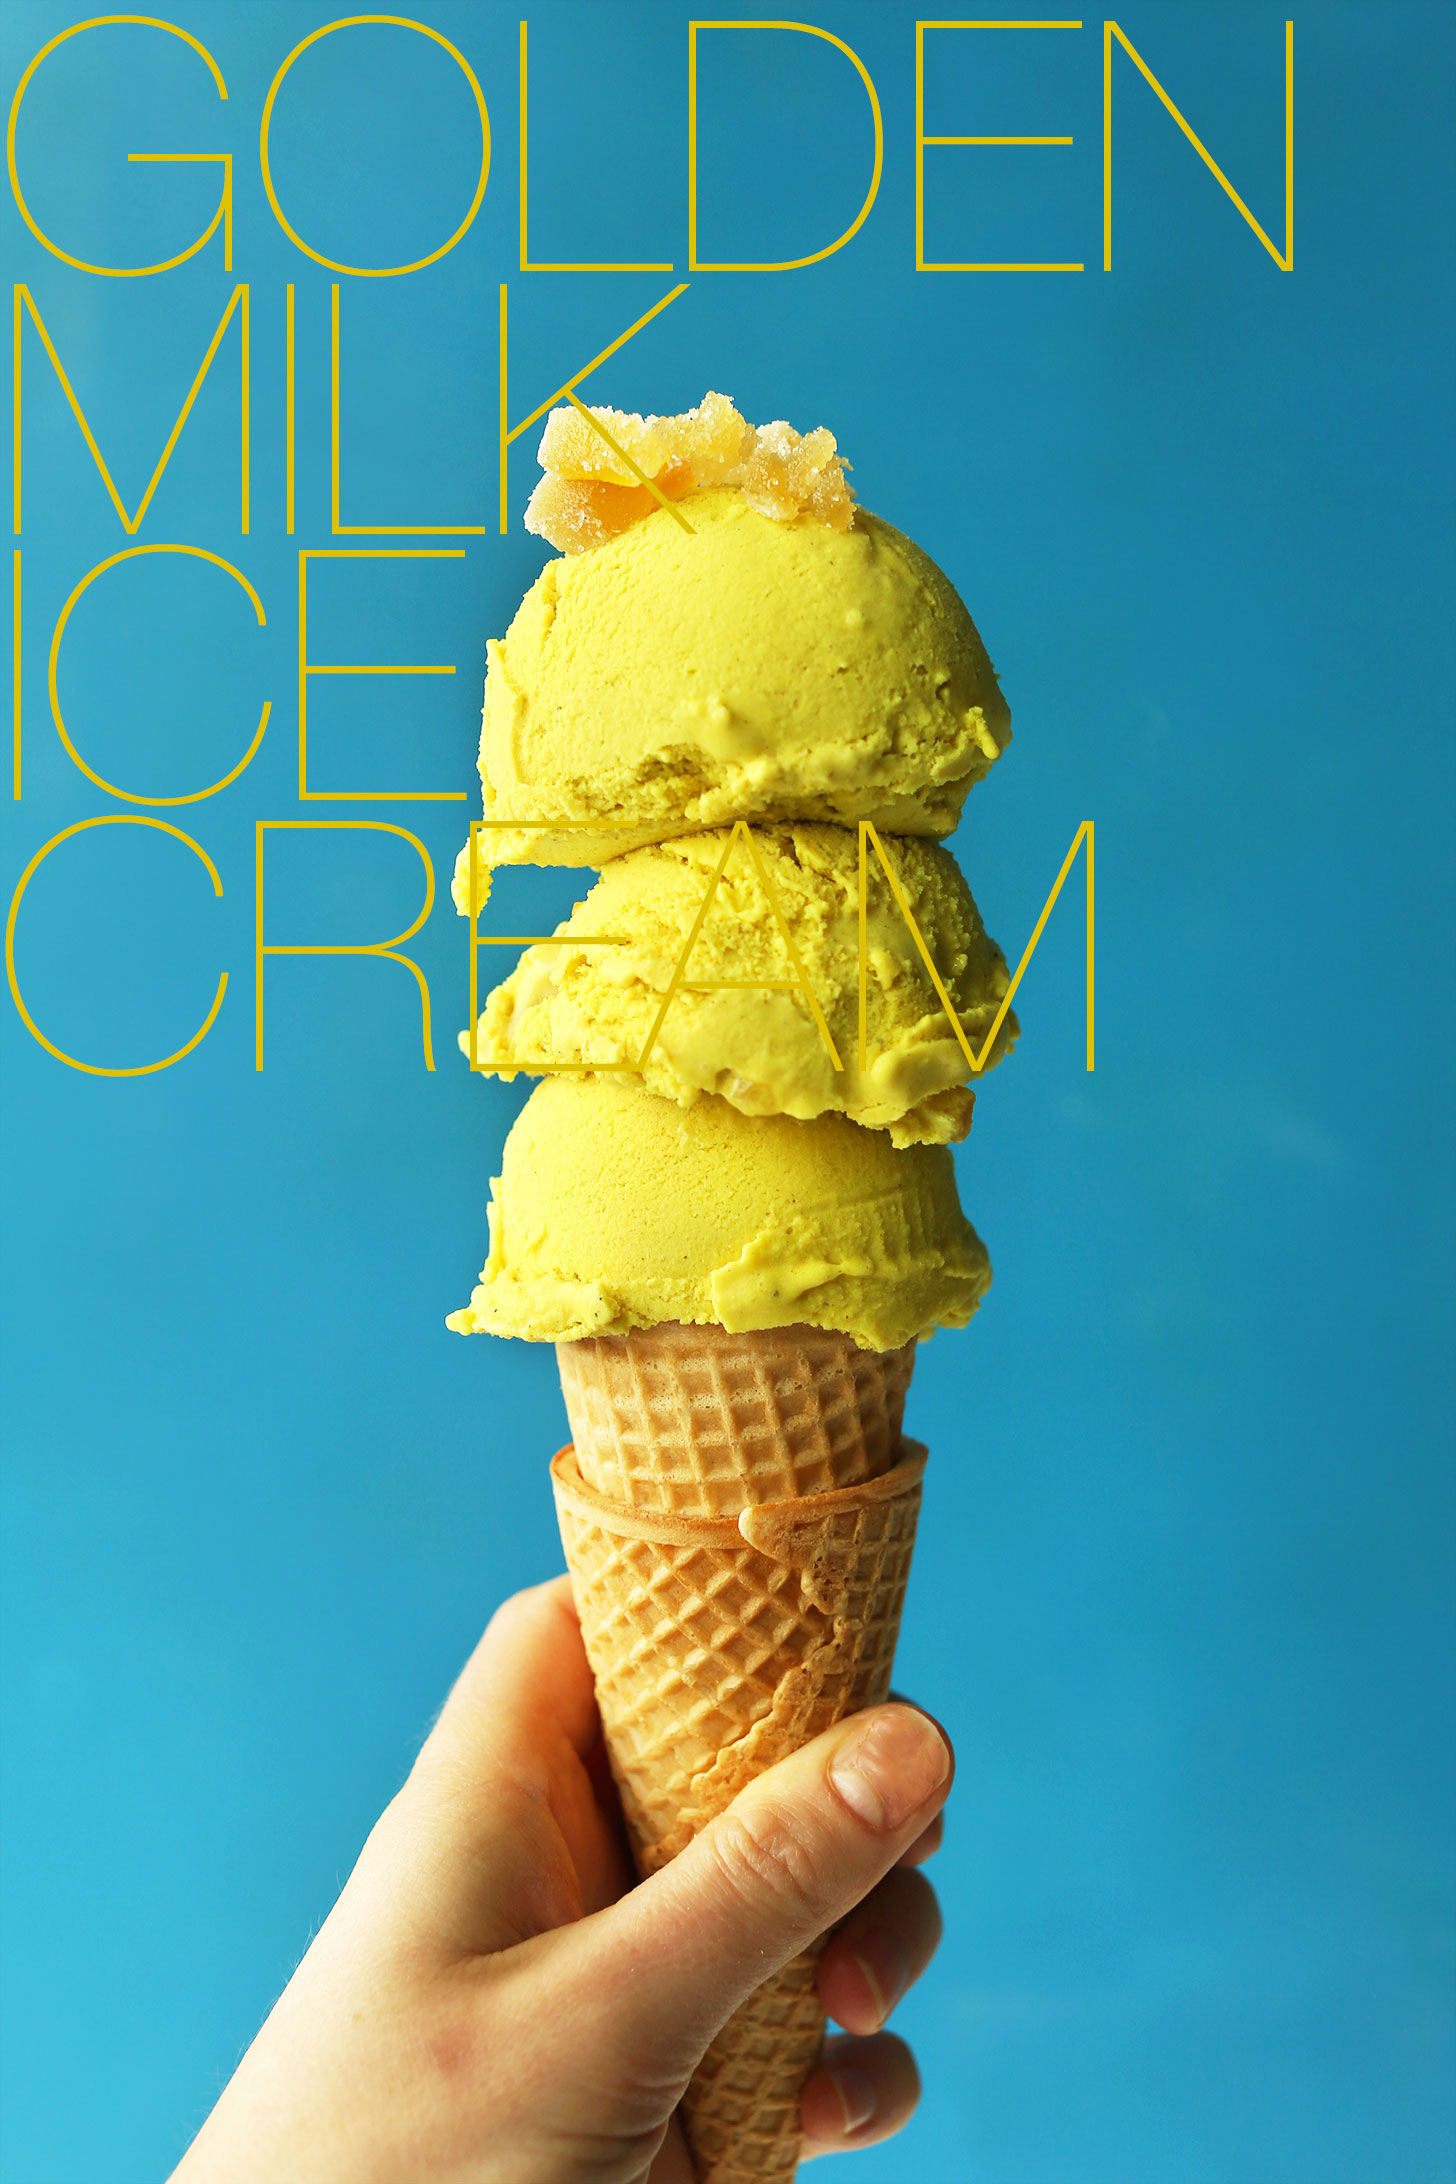 Amazing-golden-milk-turmeric-ice-cream-vegan-glutenfree-icecream-goldenmilk-turmeric-healthy-icecream-recipe